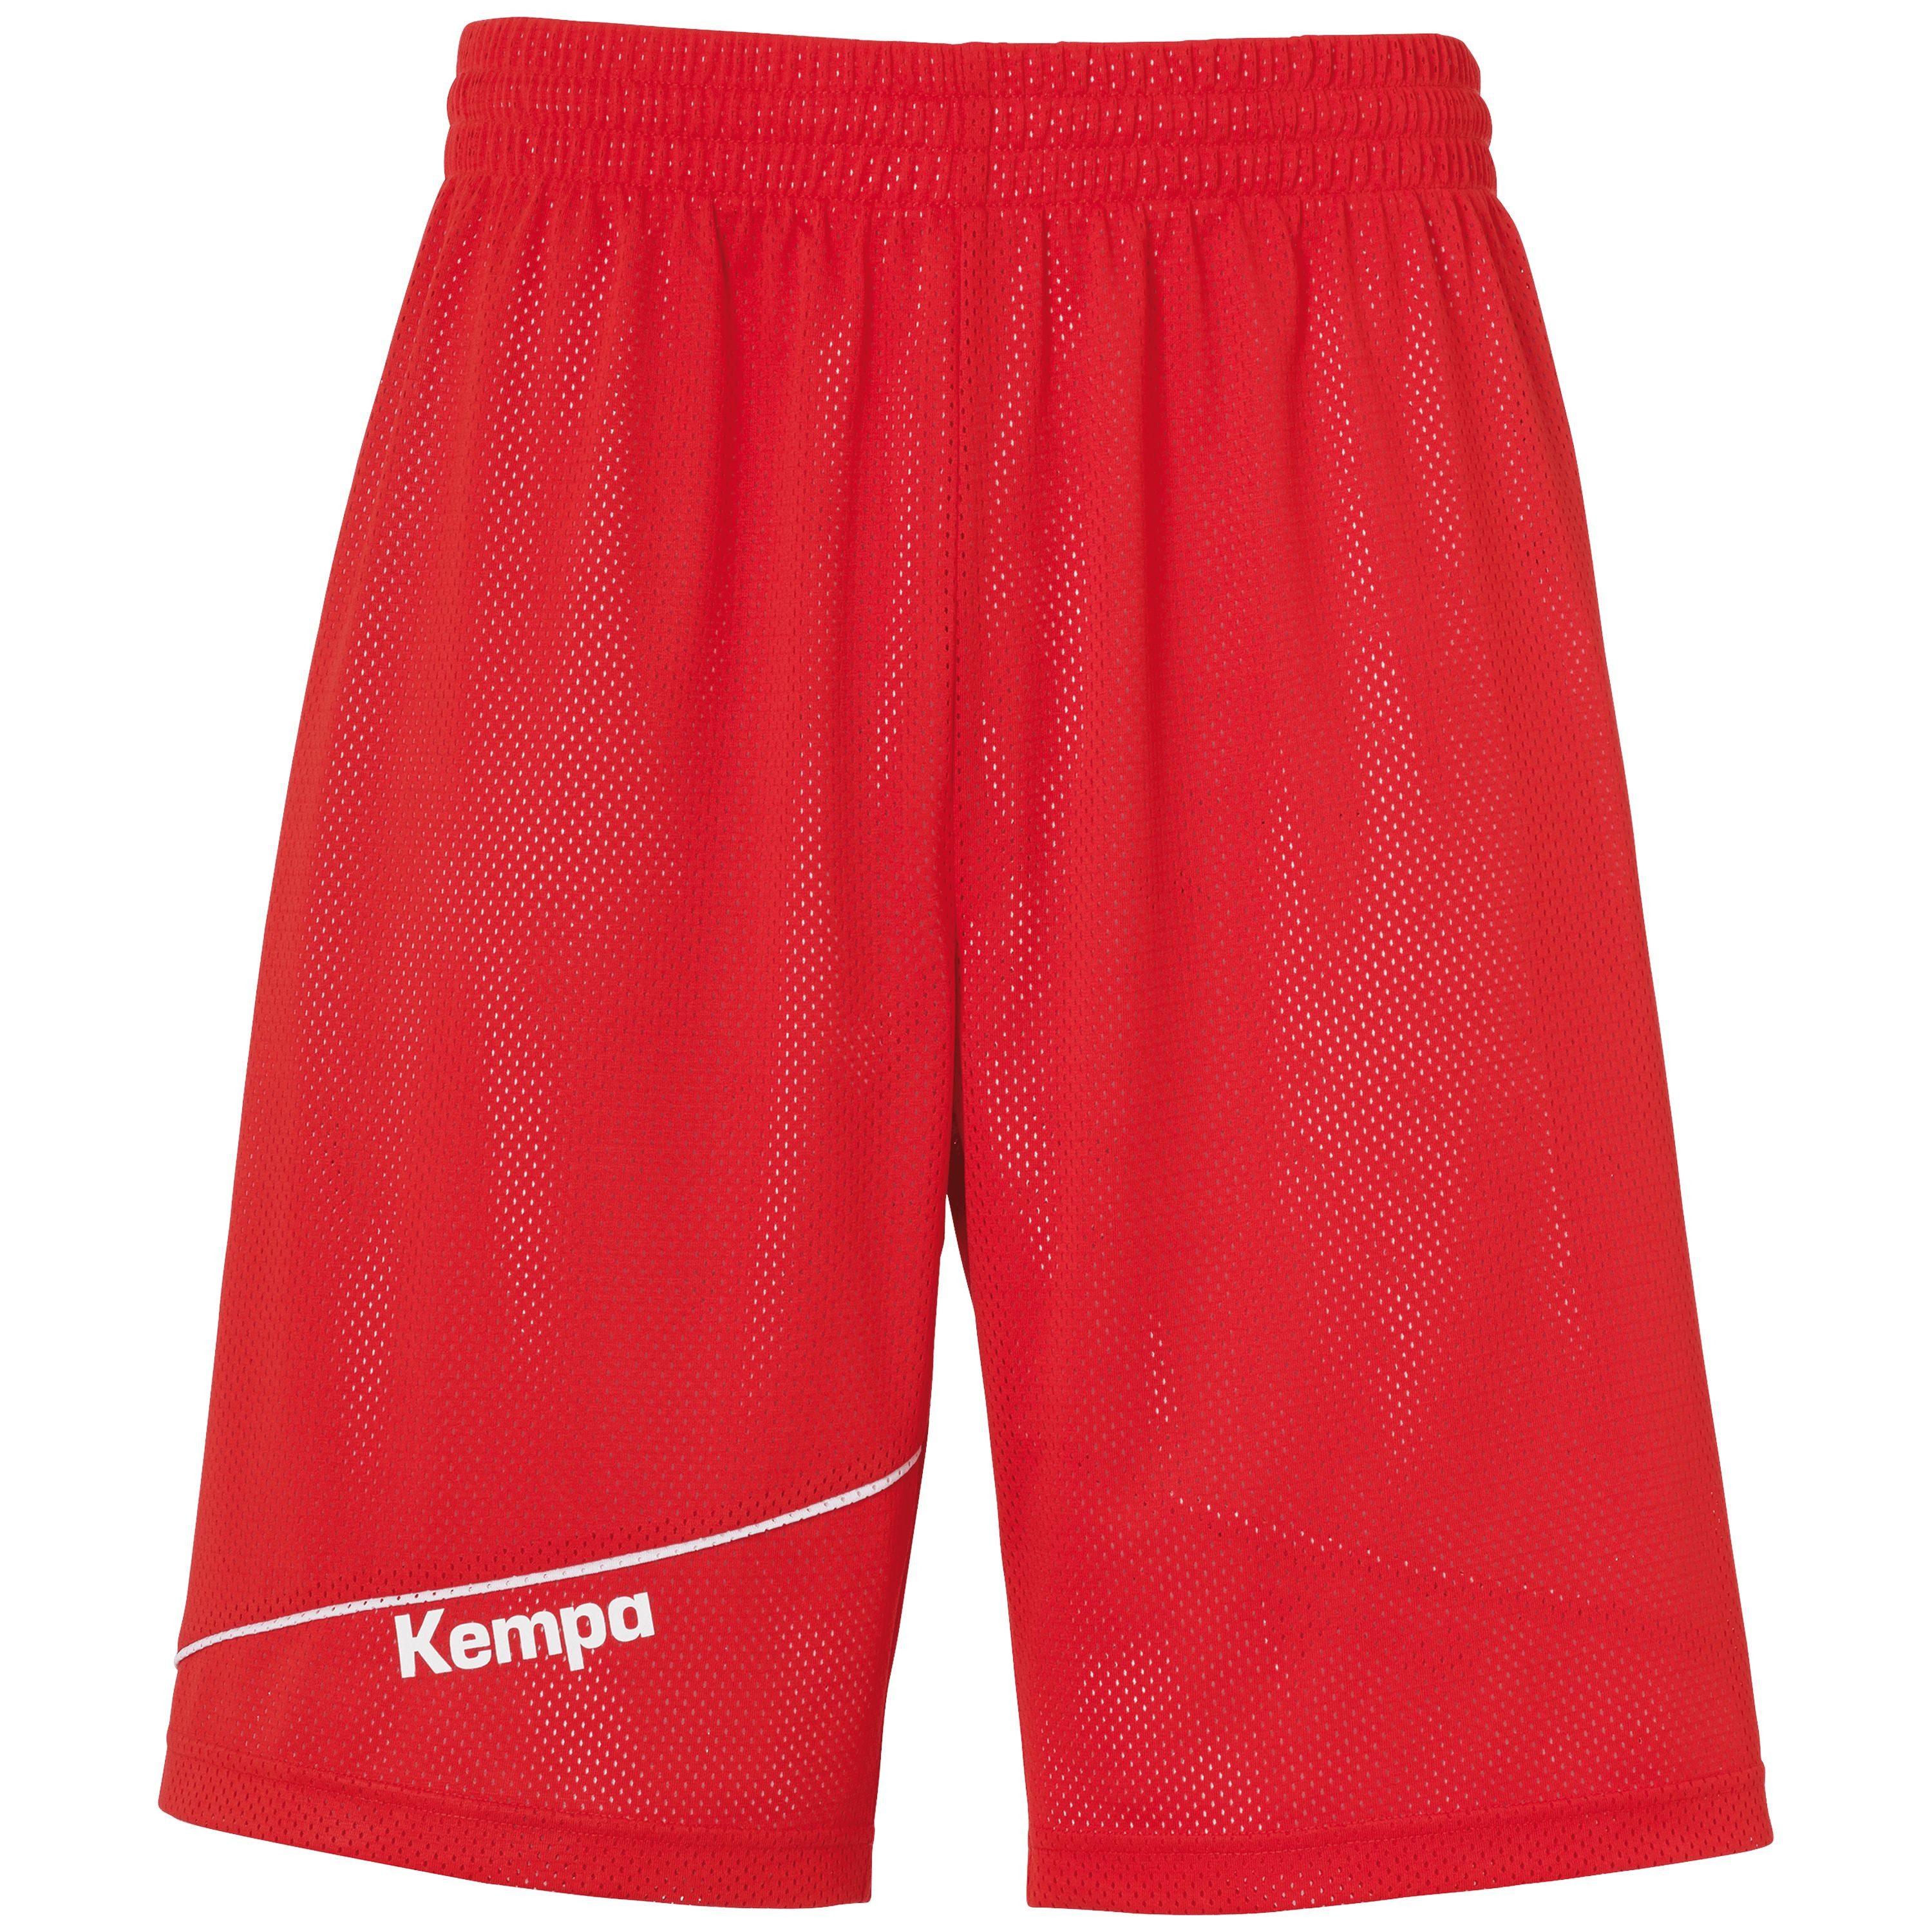 Kempa Trainingshose Reversible Shorts